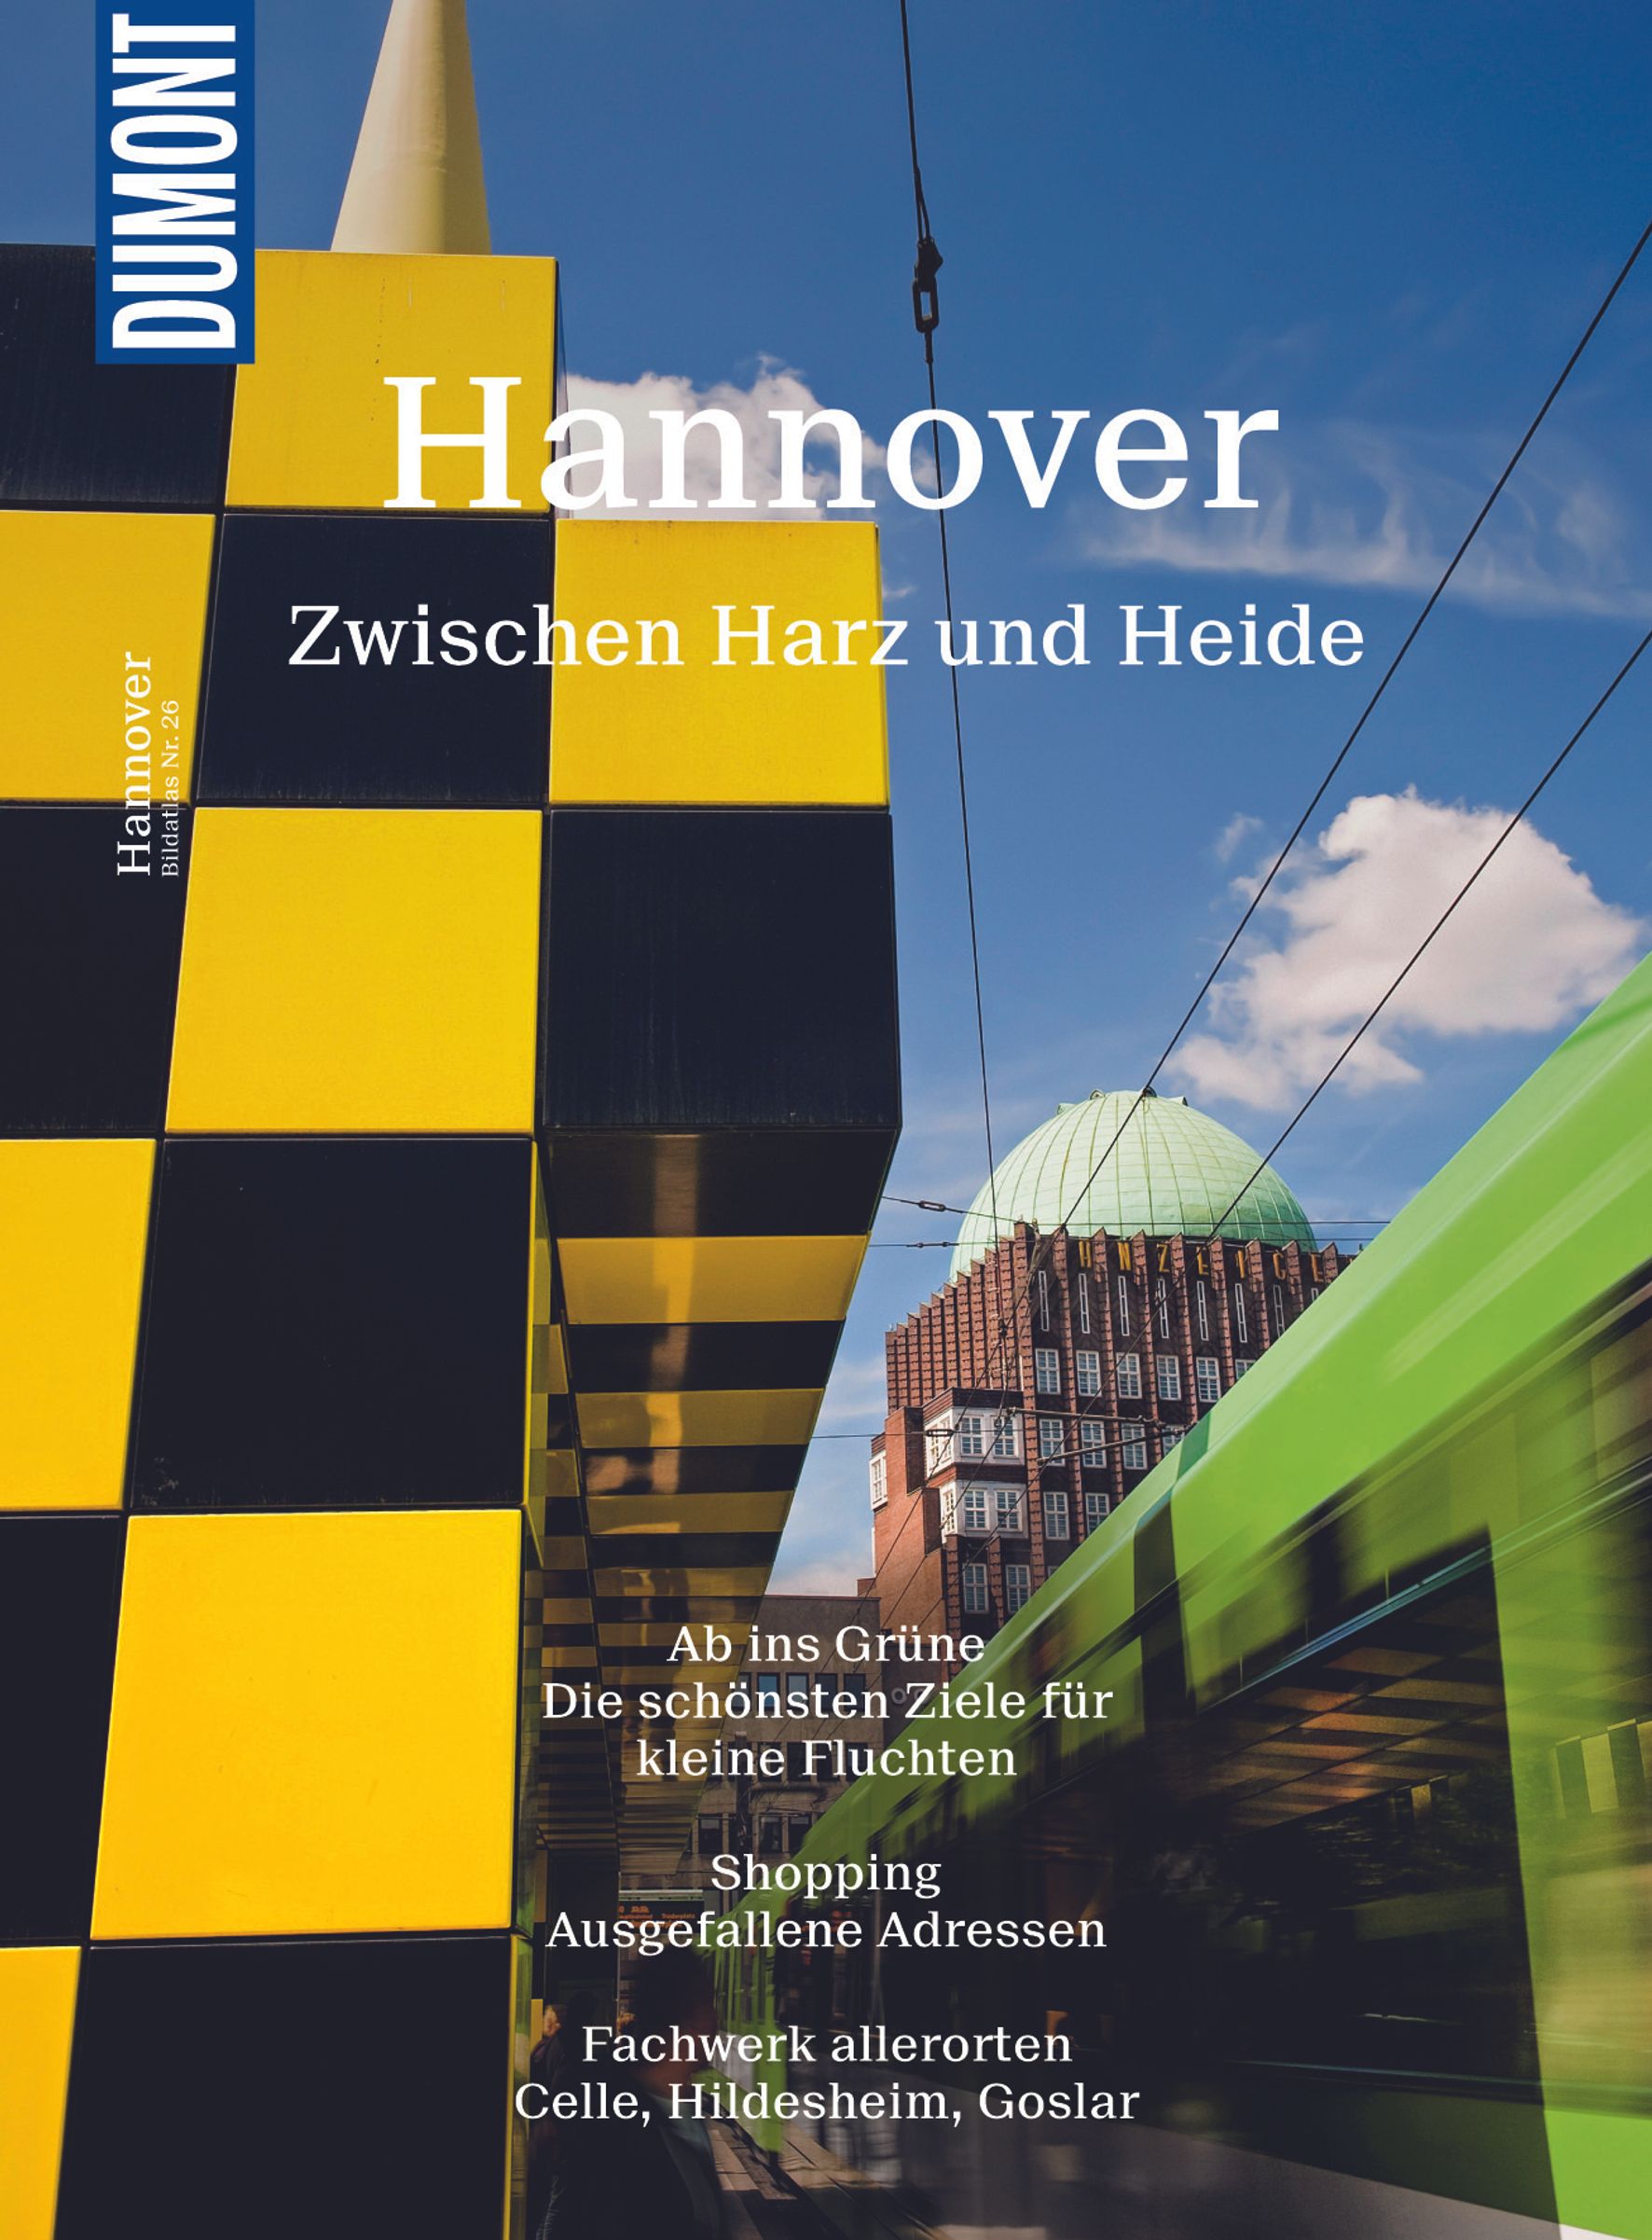 MAIRDUMONT Hannover zwischen Harz und Heide (eBook)